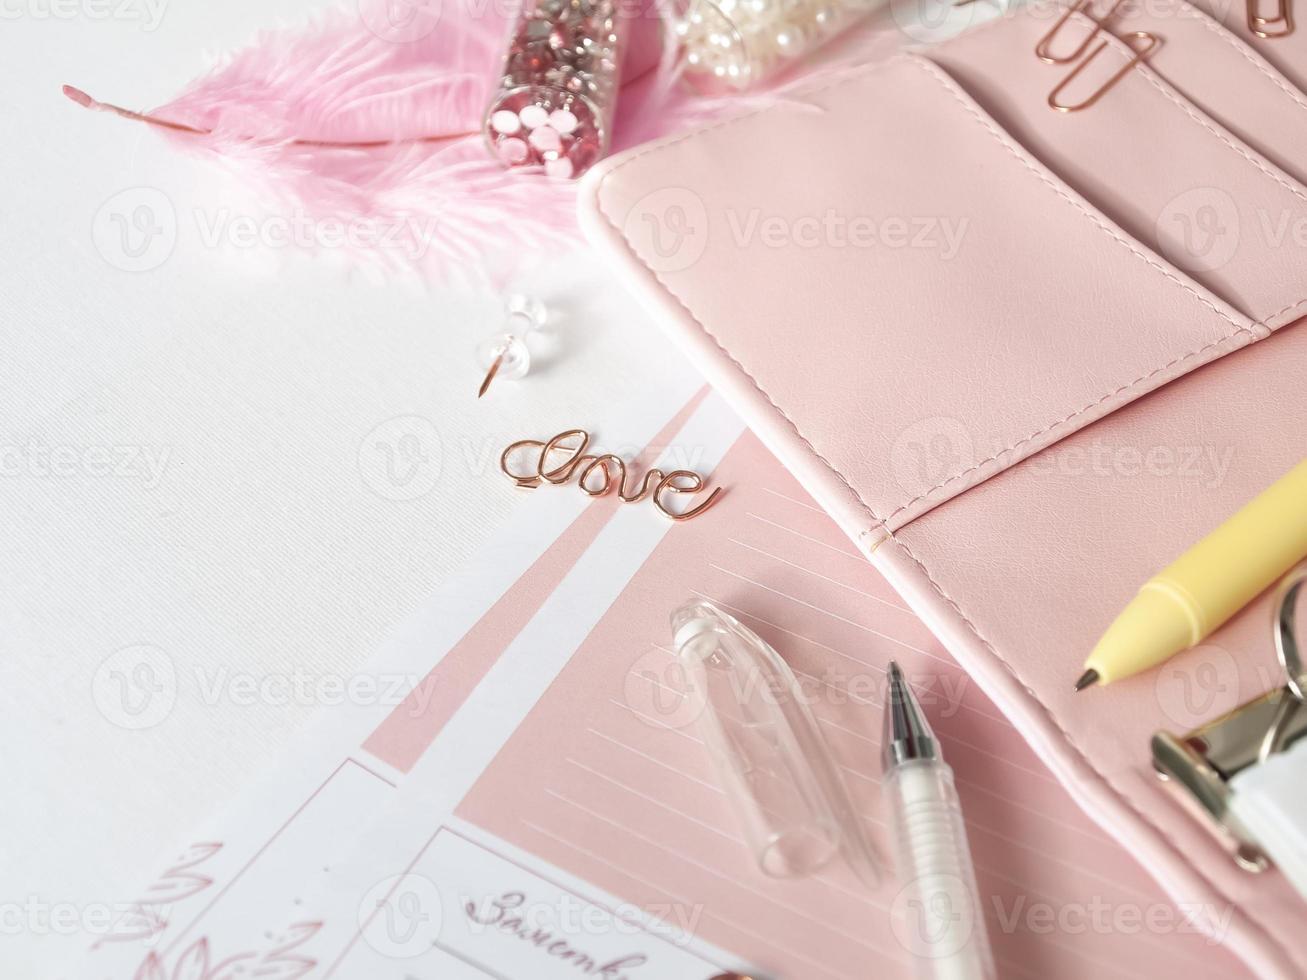 cancelleria per pianificatore in oro rosa. amore scritte a forma di spillo. penna bianca e agenda rosa su sfondo bianco foto